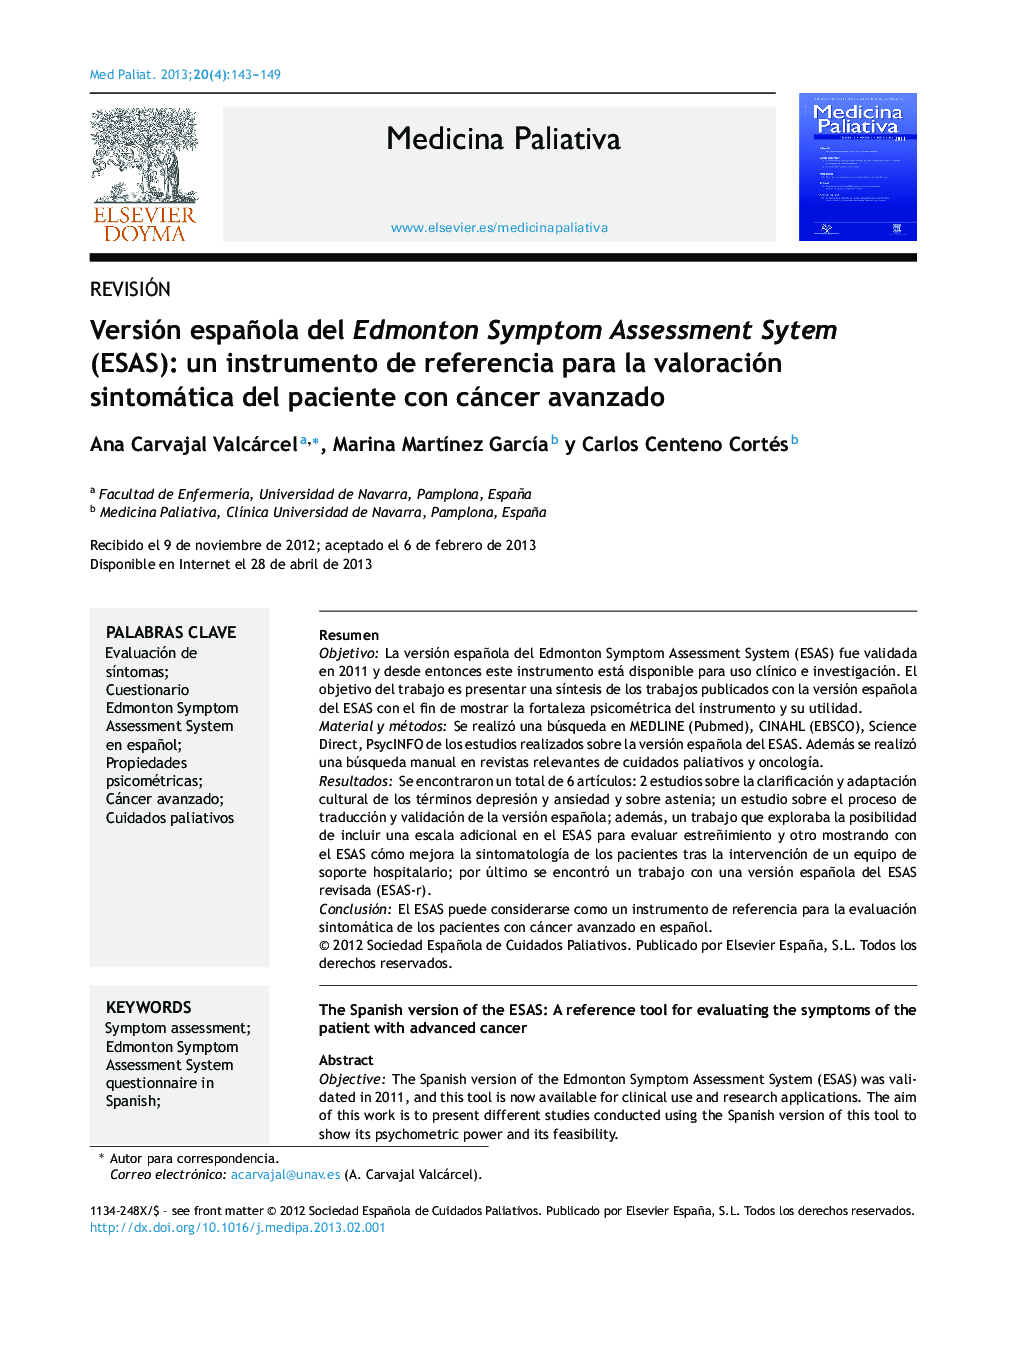 Versión española del Edmonton Symptom Assessment Sytem (ESAS): un instrumento de referencia para la valoración sintomática del paciente con cáncer avanzado